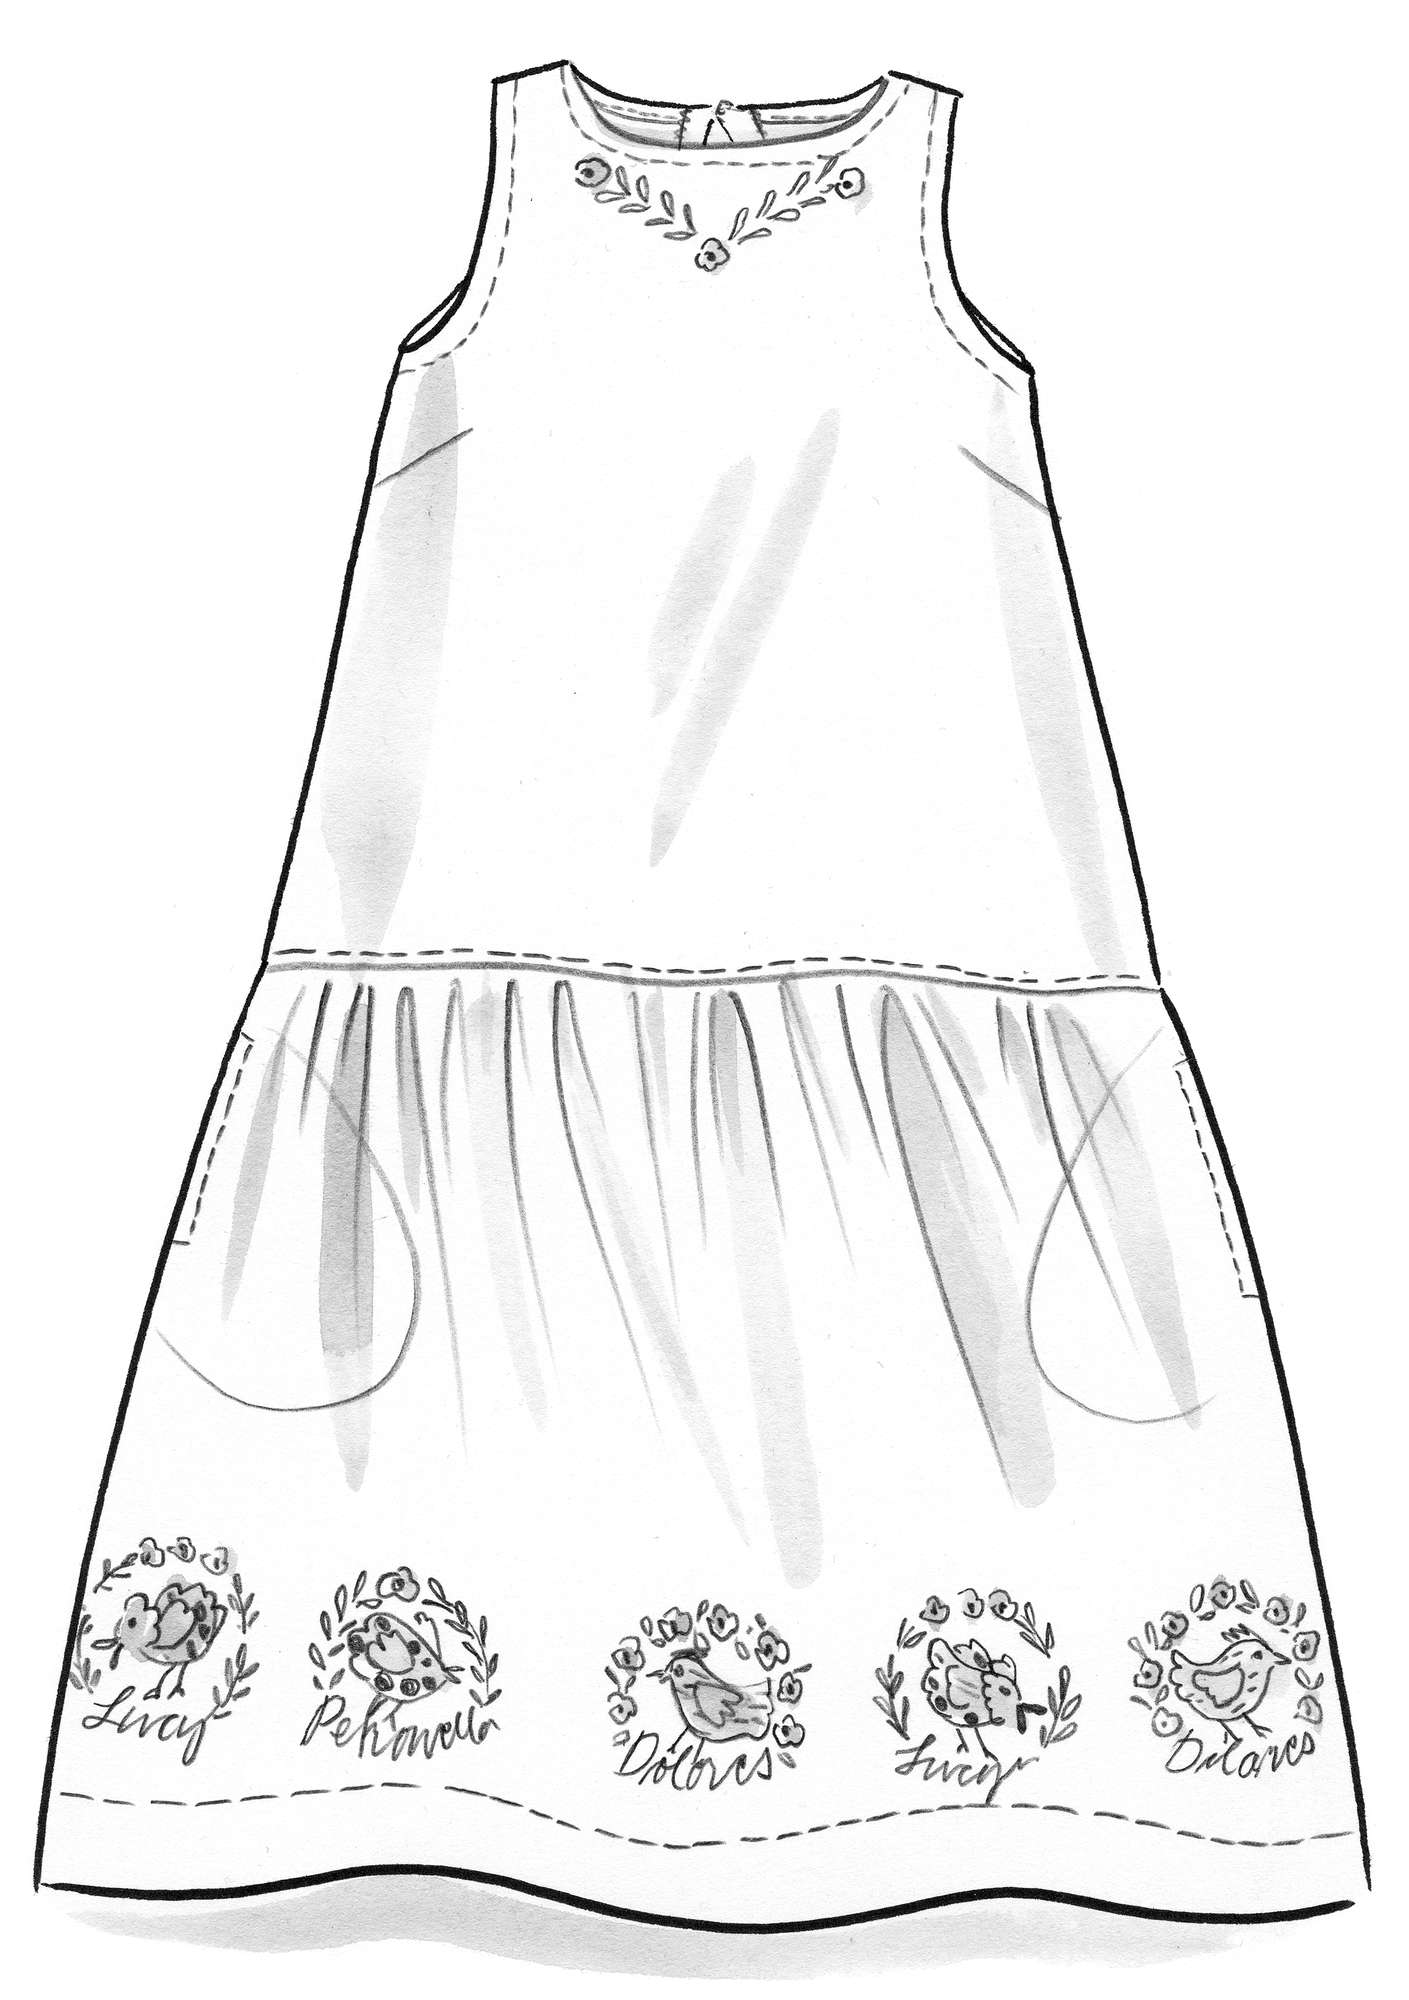 “Petronella” dress in woven organic cotton/linen